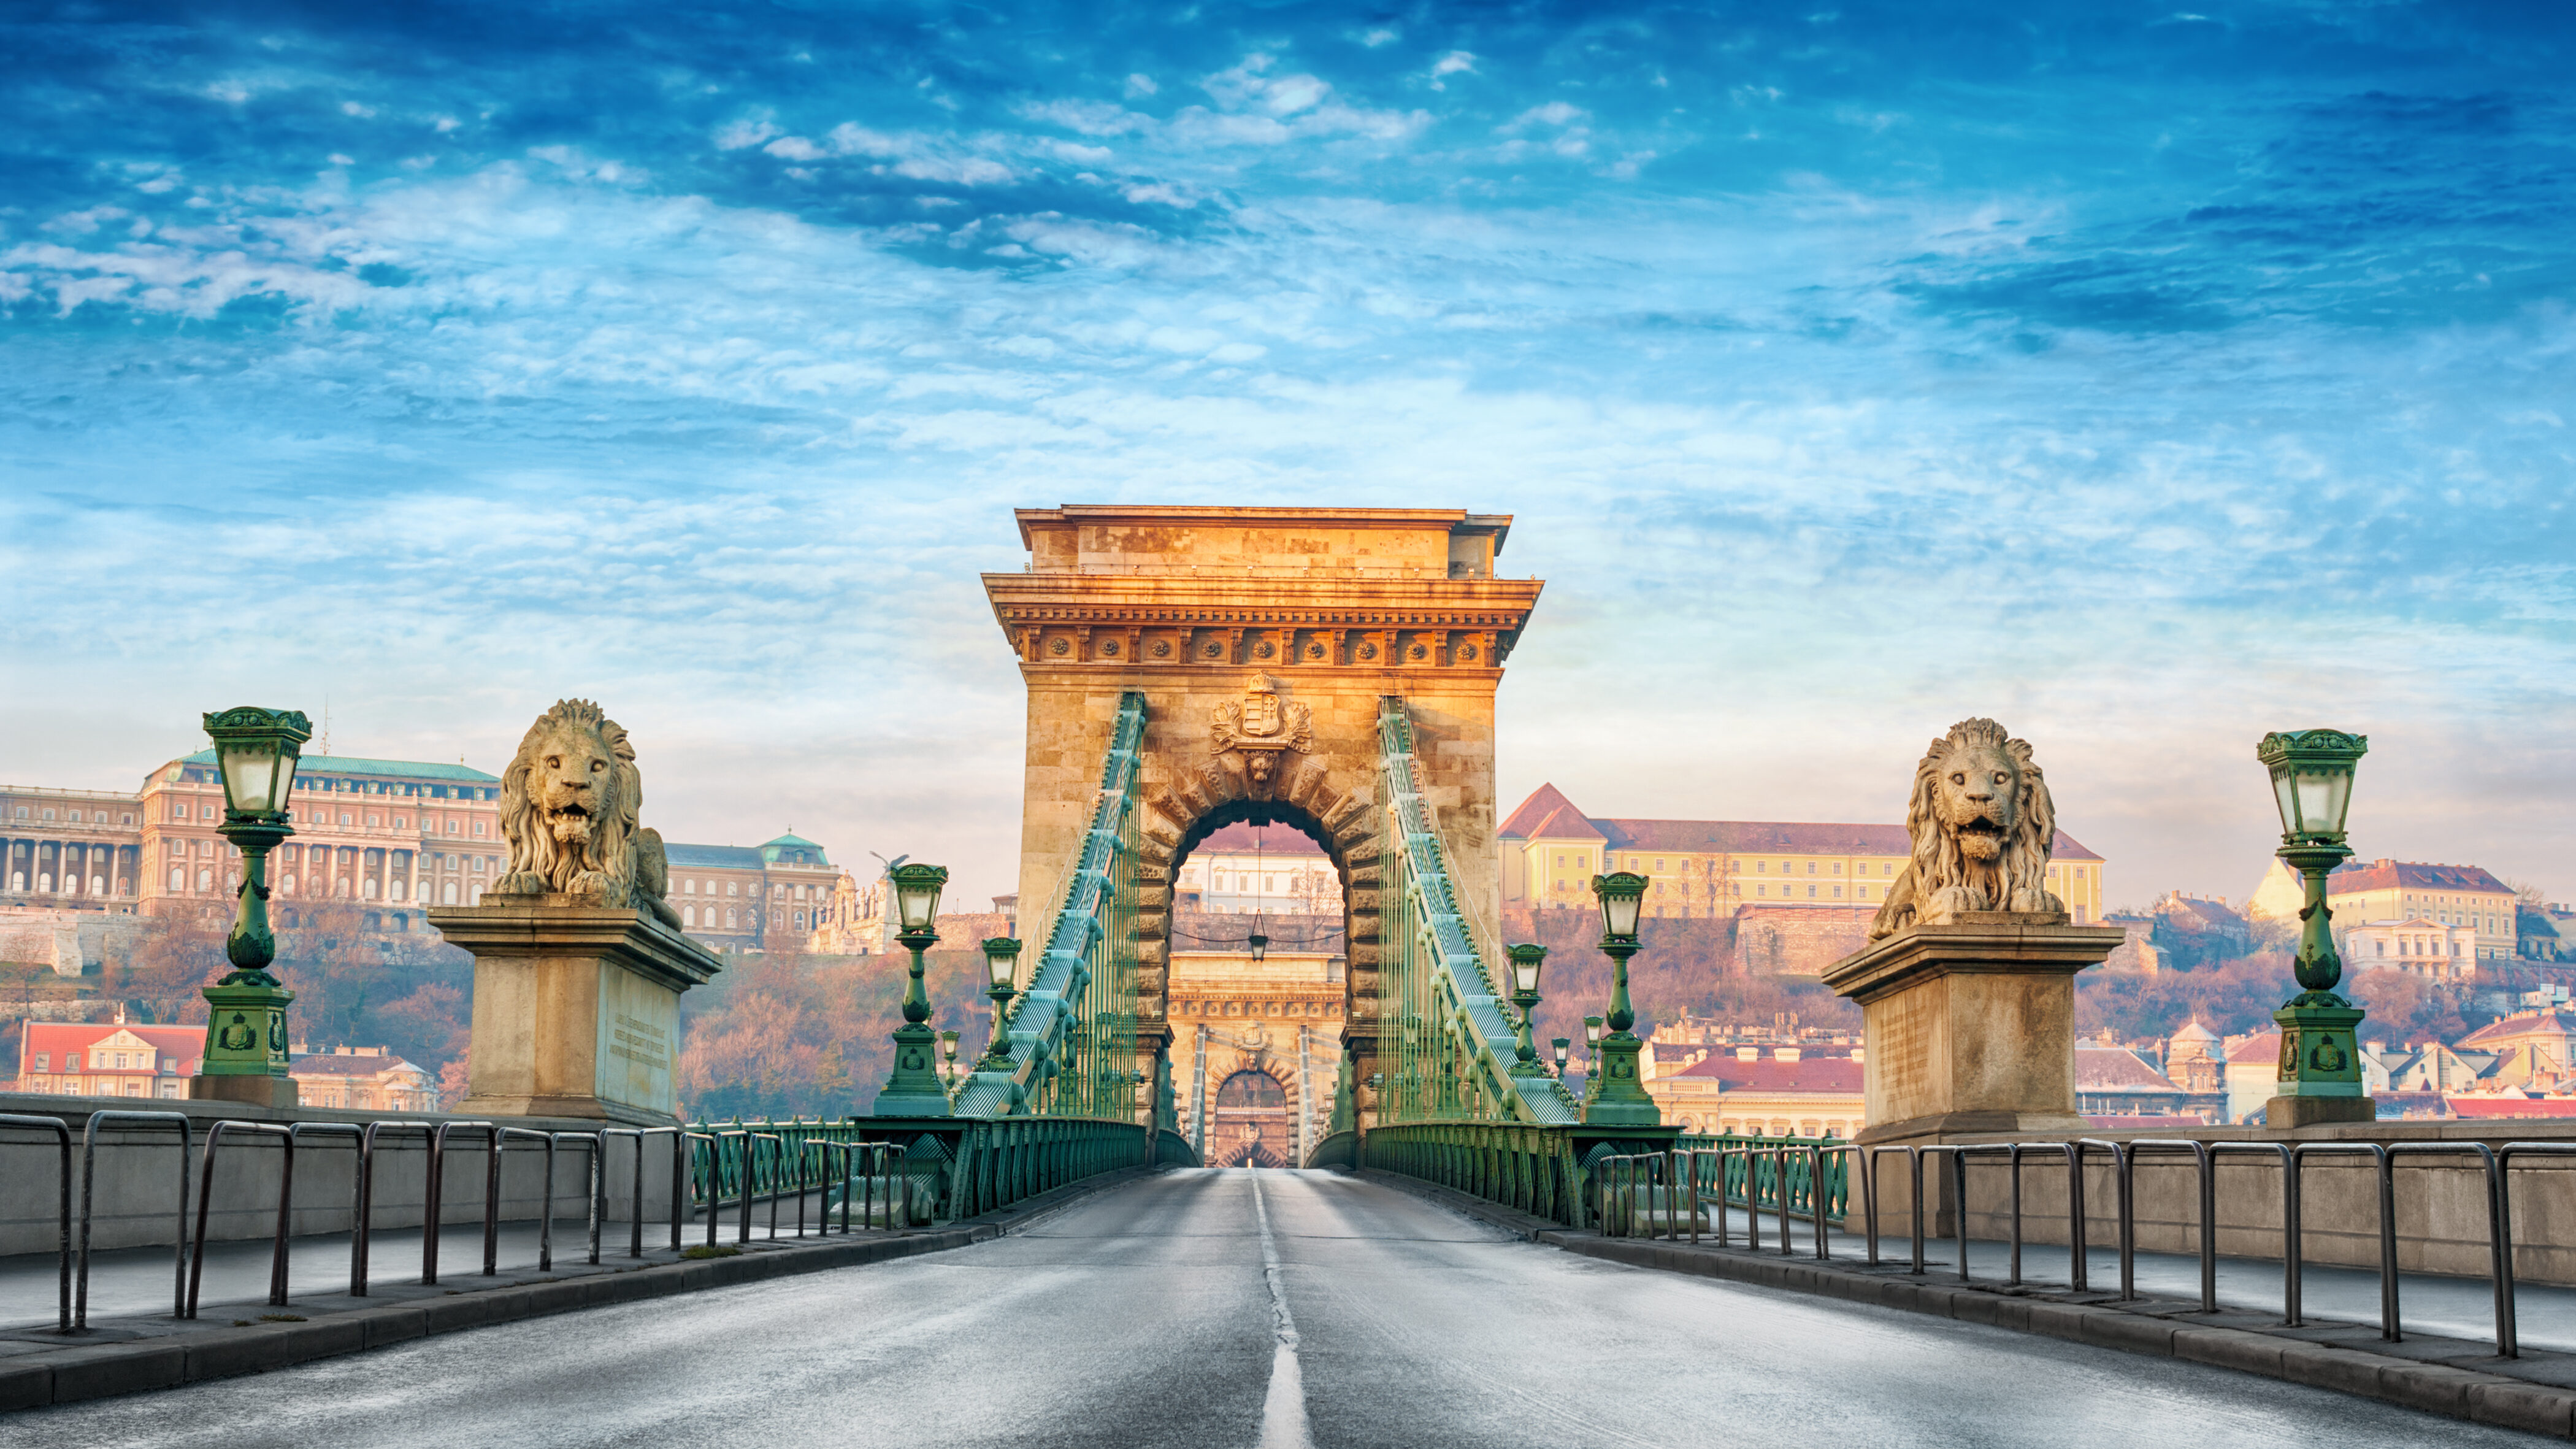 Budapest világ 10 legvonzóbb turistacélpontja között | nlc